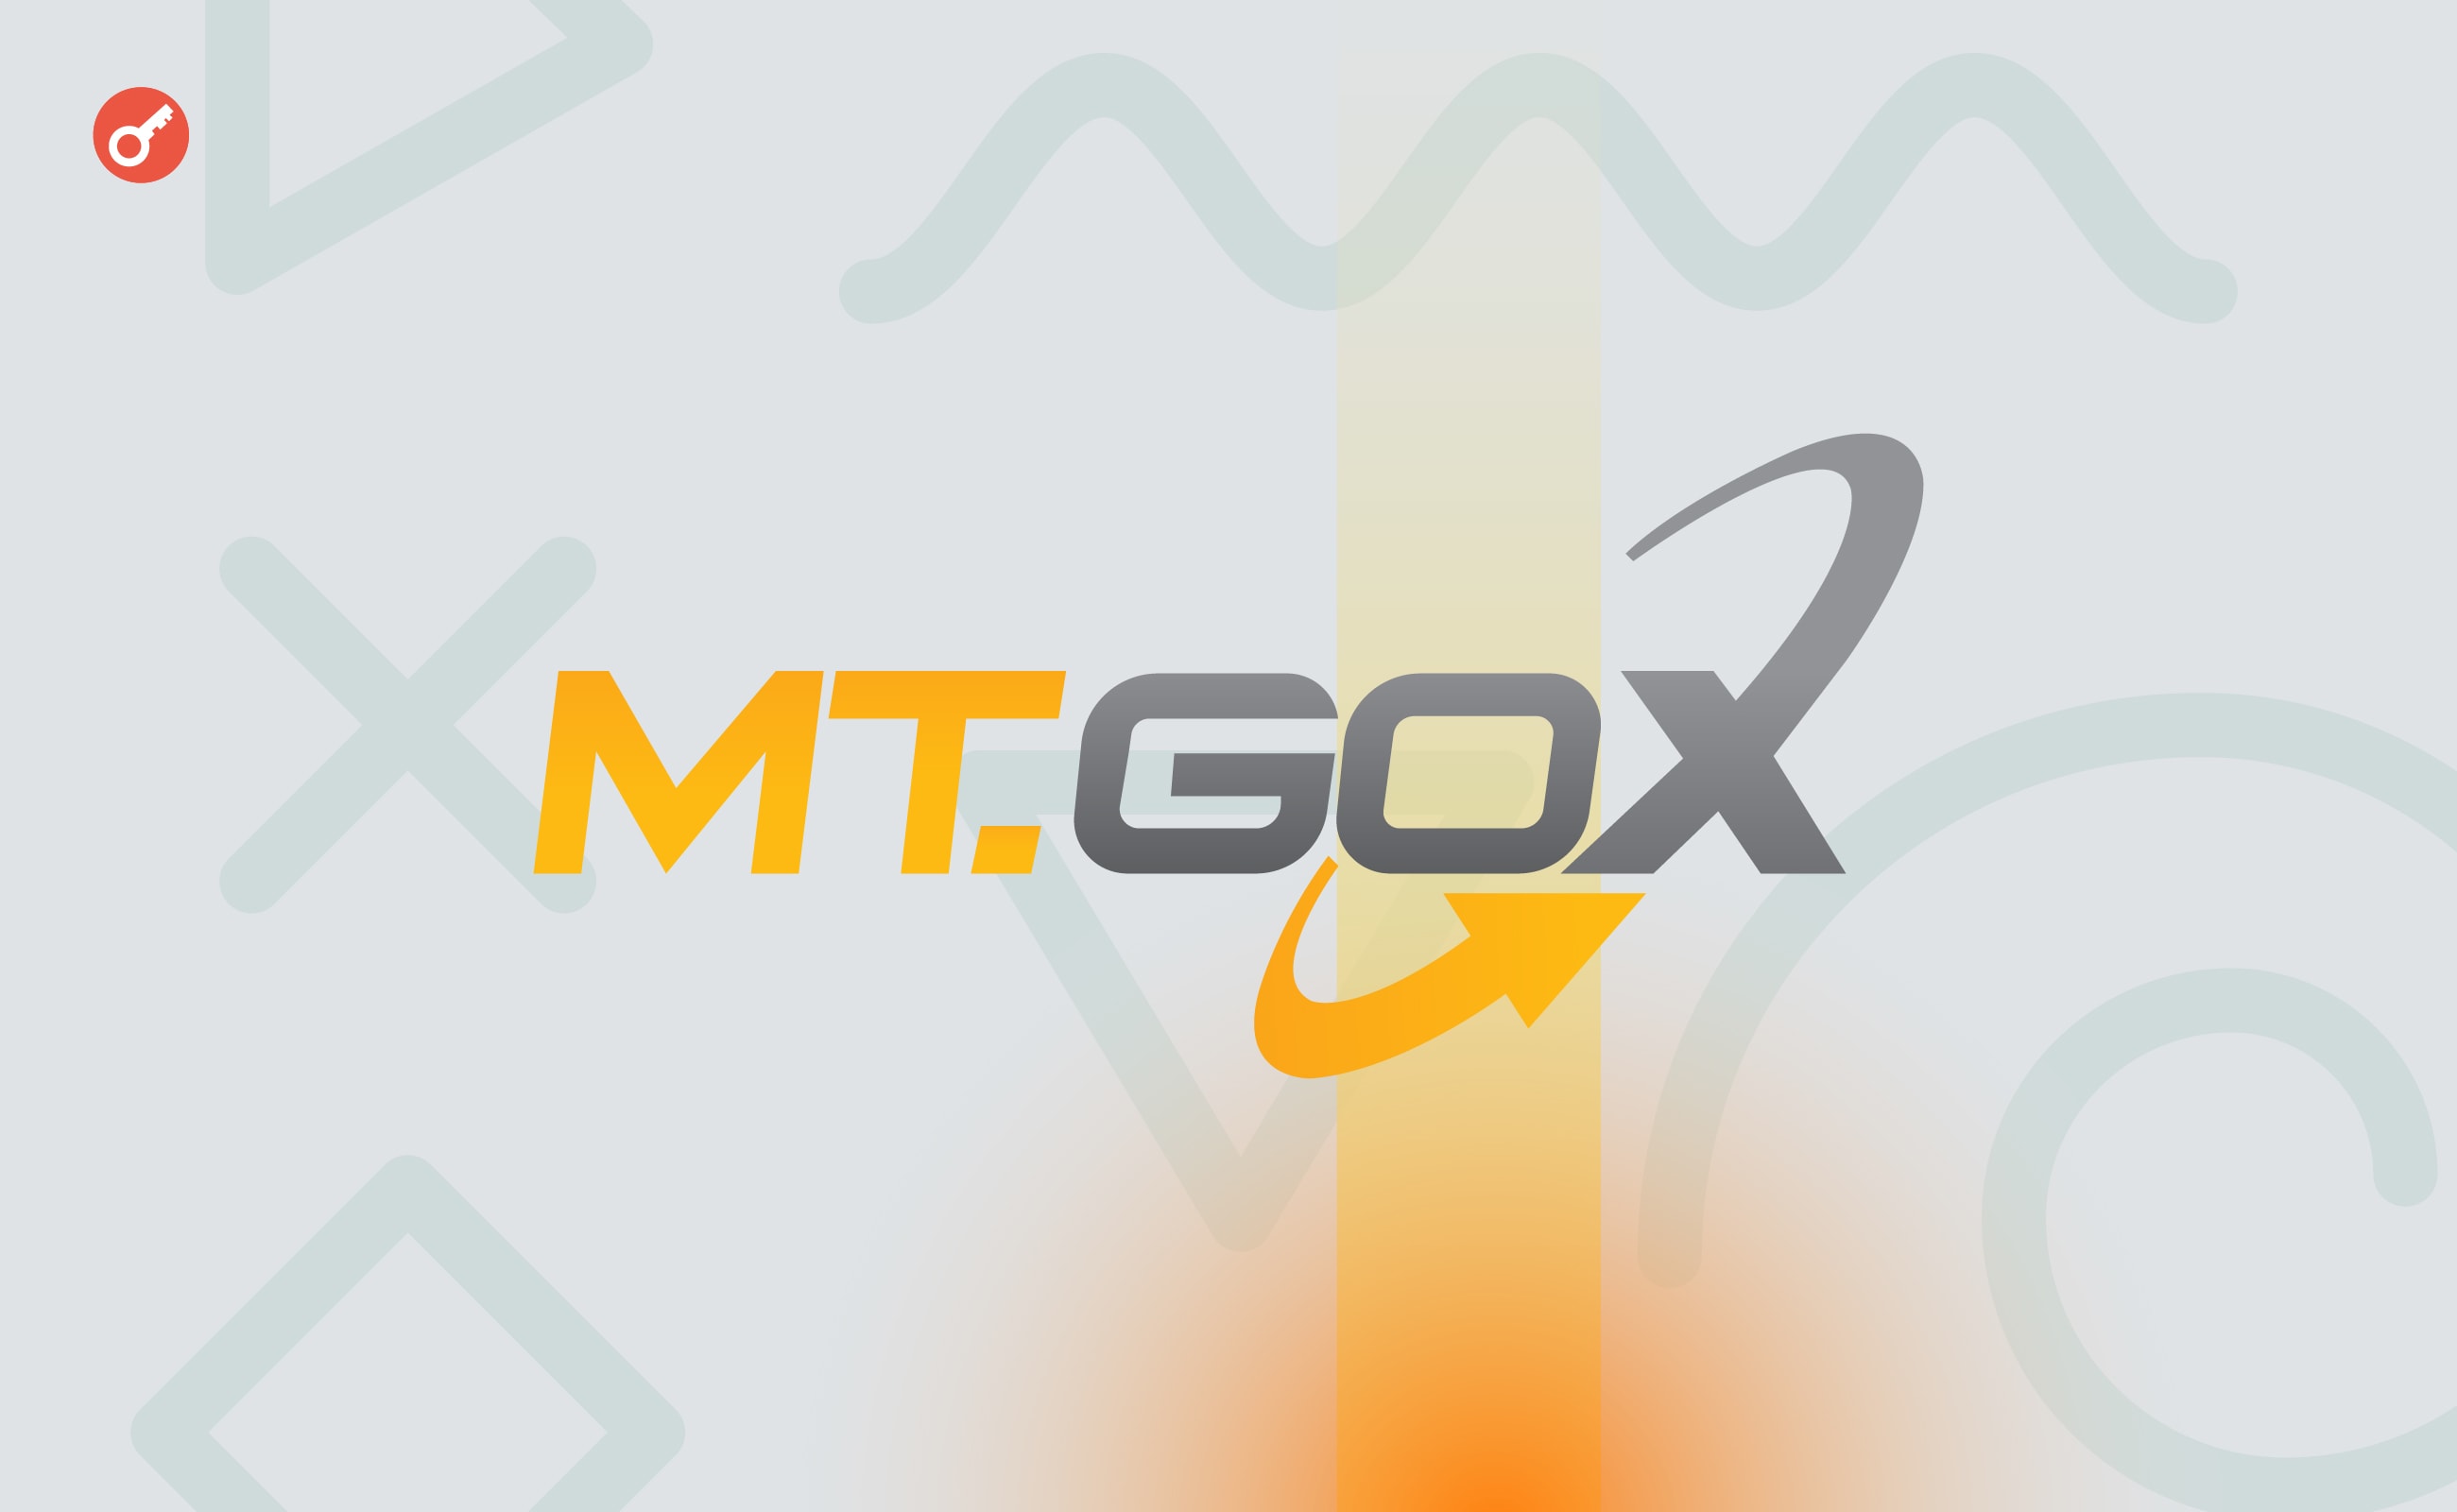 Криптобиржа Mt. Gox переместила биткоины на $9,6 млрд впервые за пять лет. Заглавный коллаж новости.